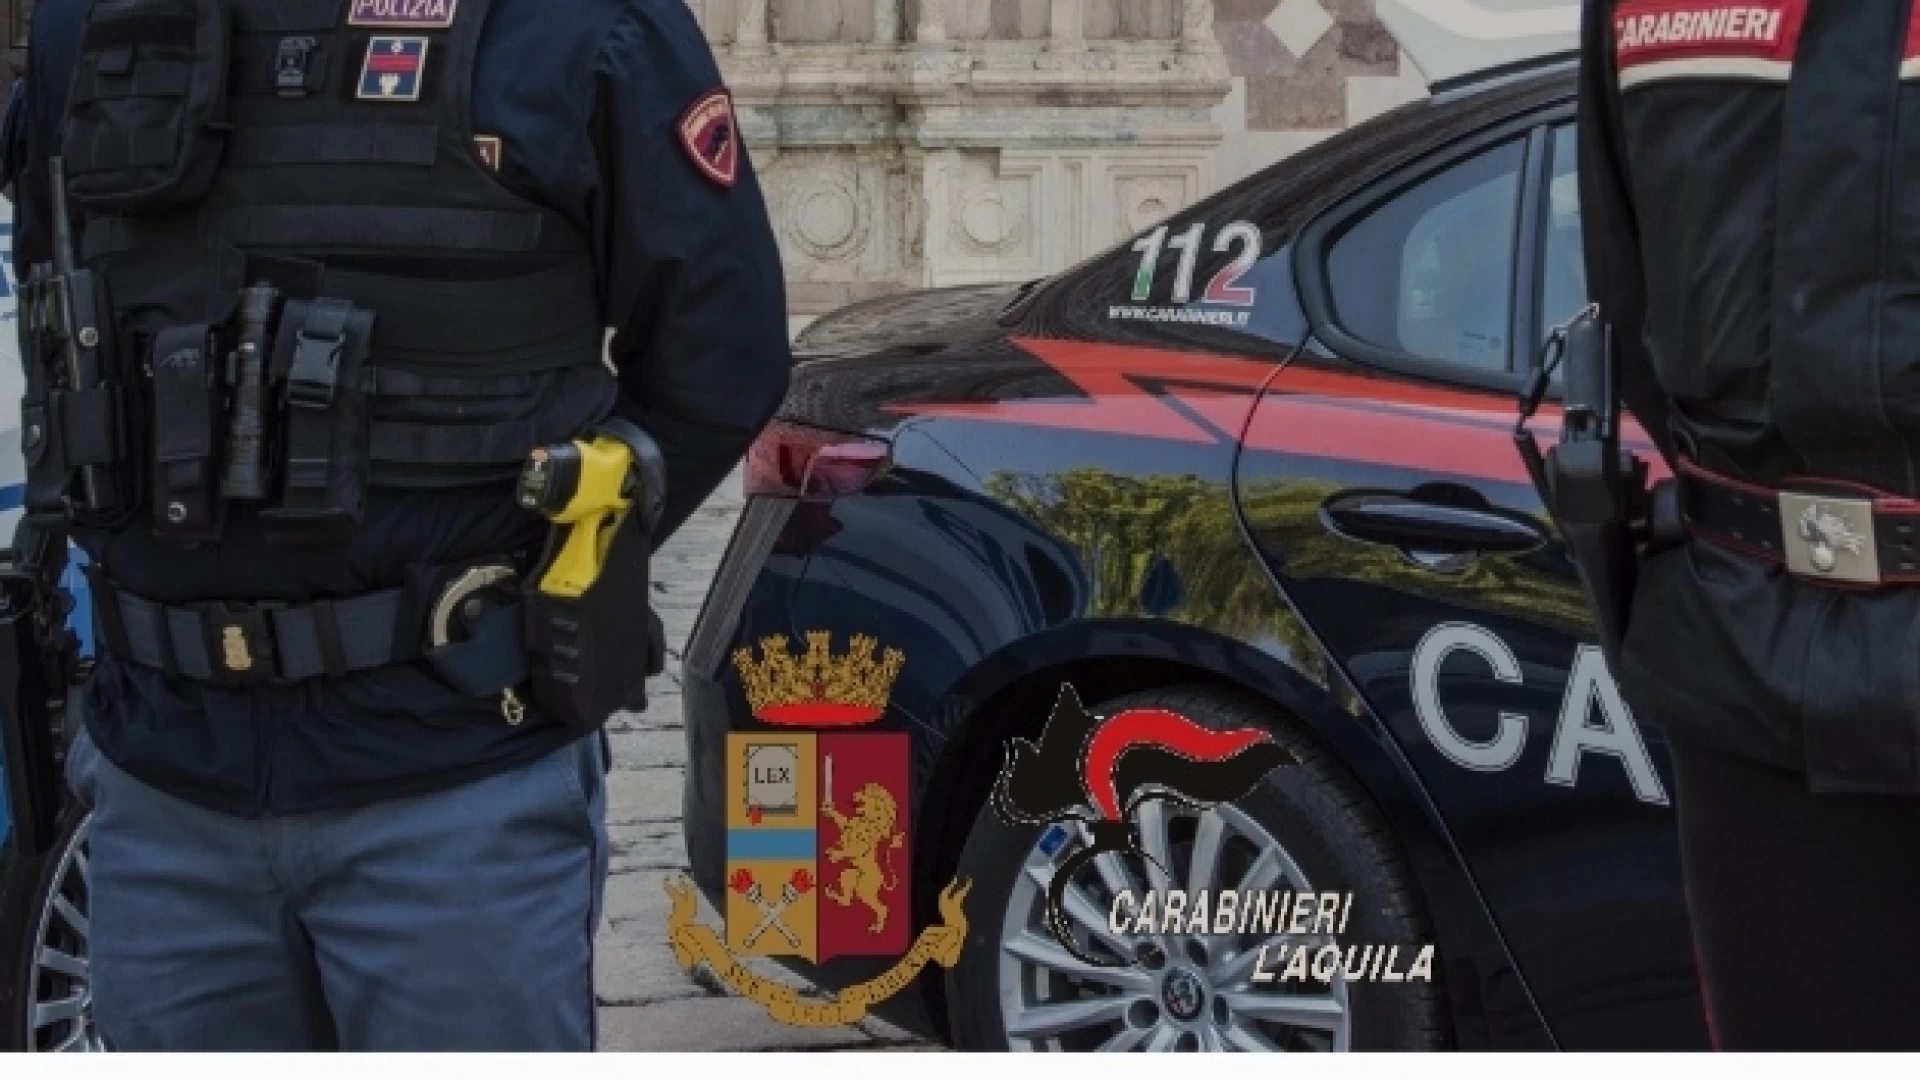 Provincia dell'Aquila: in dotazione a Carabinieri e Polizia il Taser modello x2